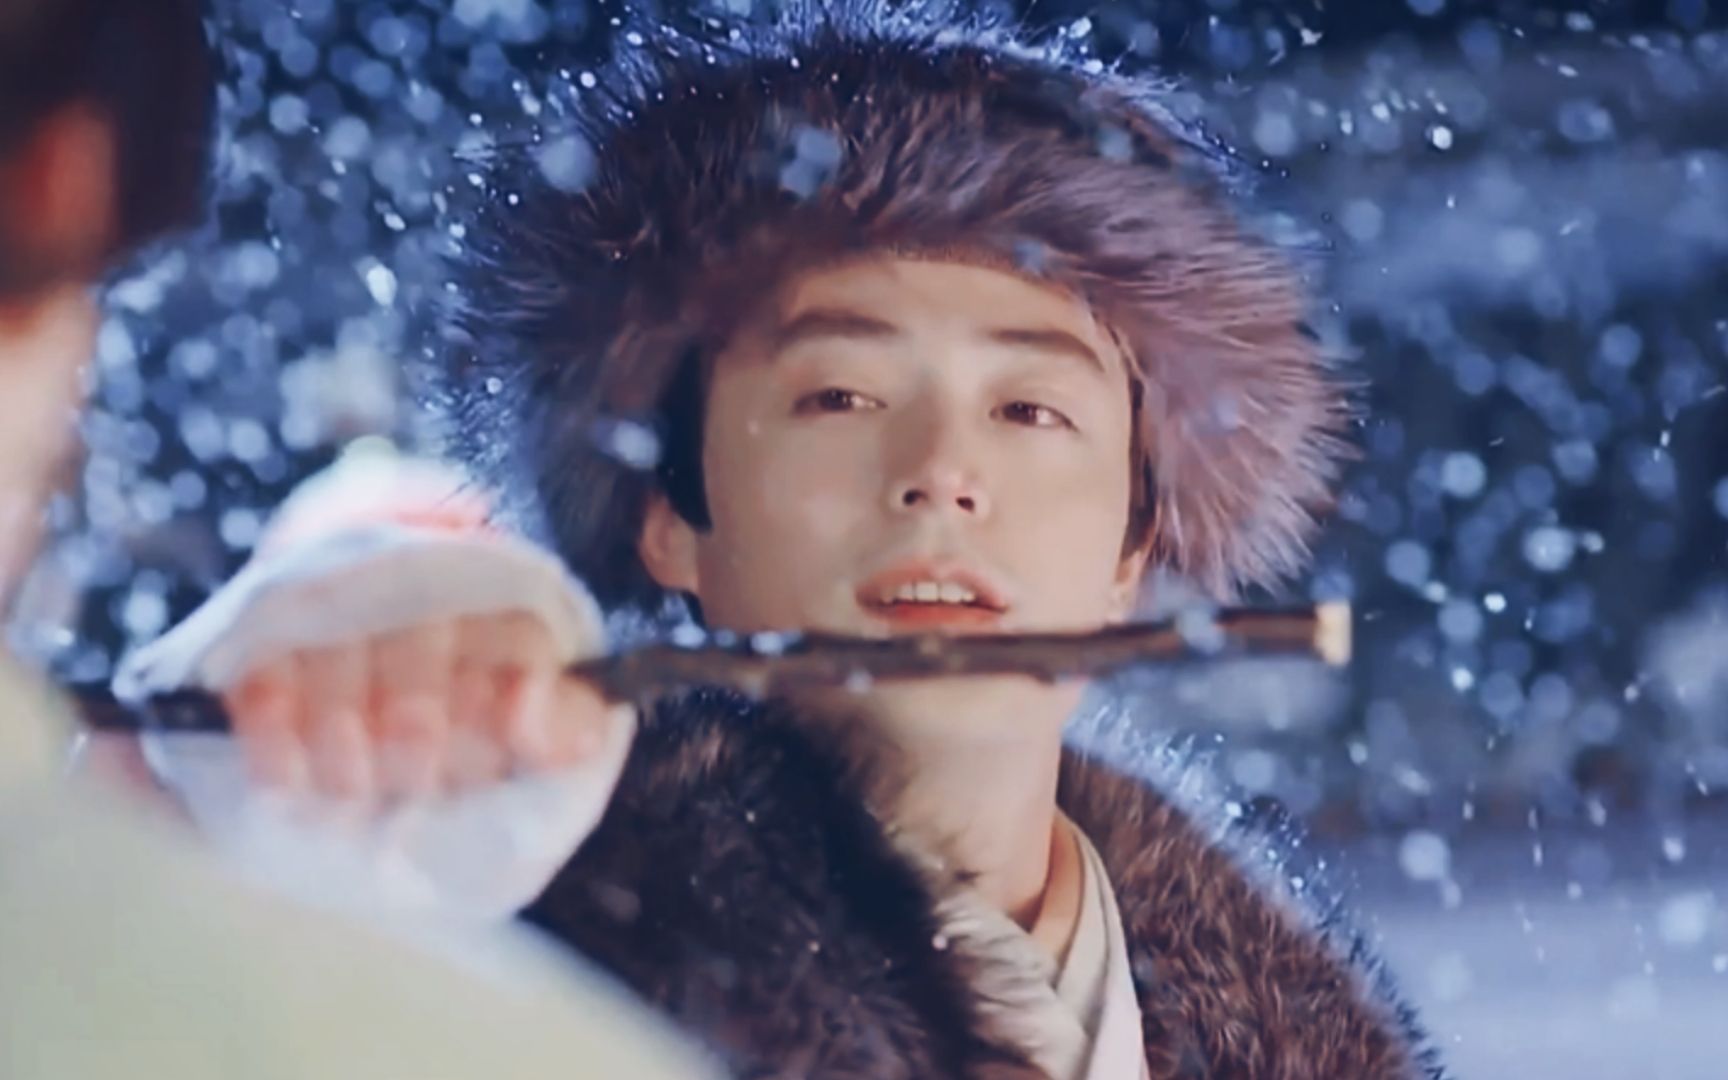 曾舜晞这组雪景大片也太有感觉了吧 完全是韩剧男主角的样子呀……